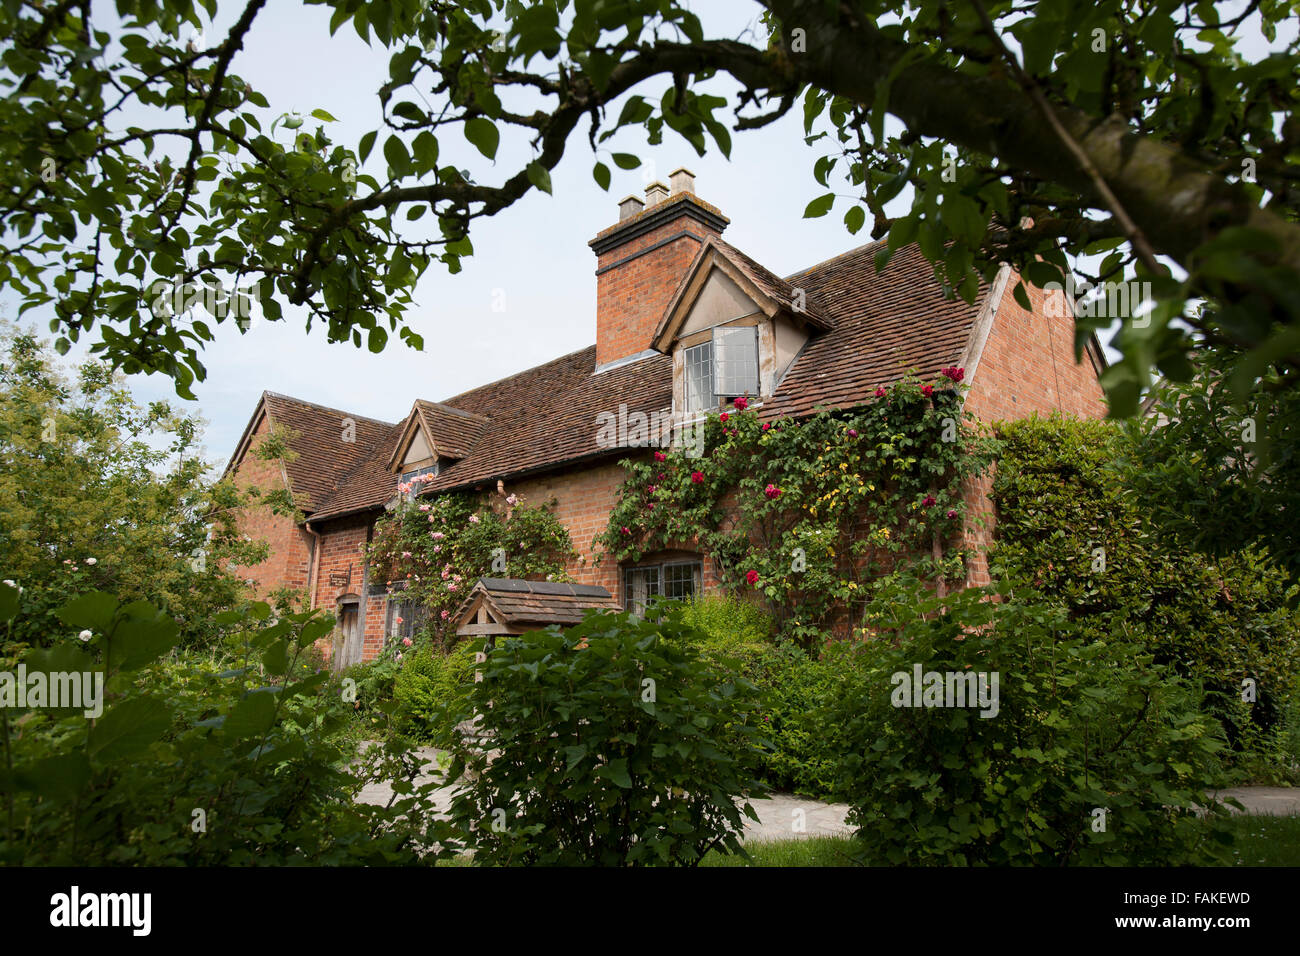 Palmers casita rural cree que es la casa de María Arden, madre de William Shakespeare, Wilcote, Warwickshire, REINO UNIDO Foto de stock